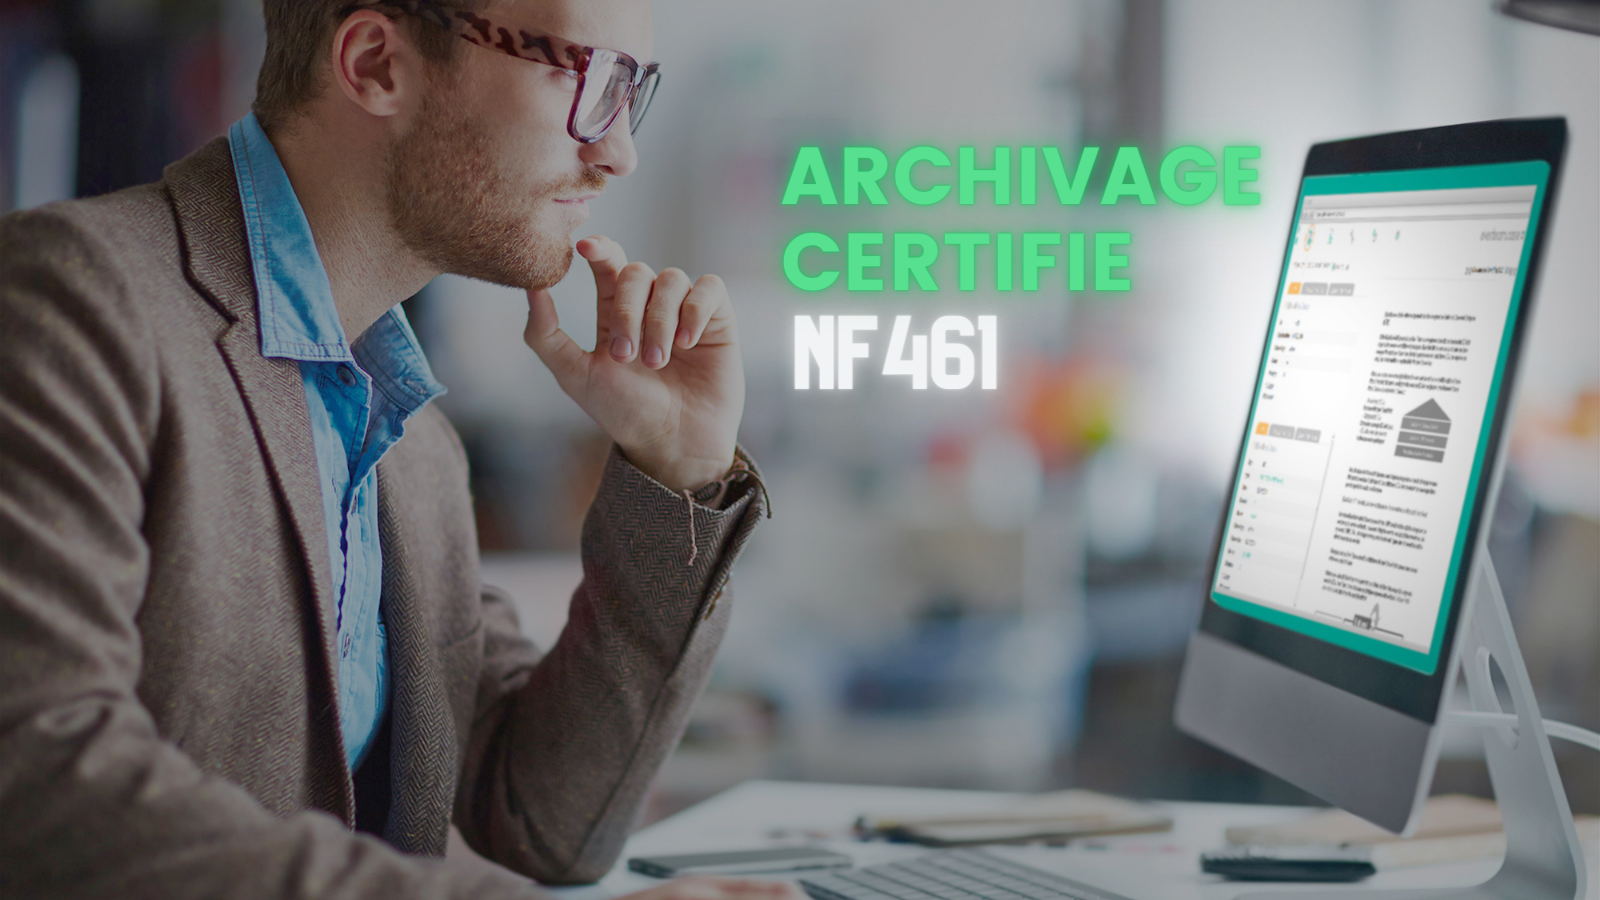 Archivage certifié NF 461